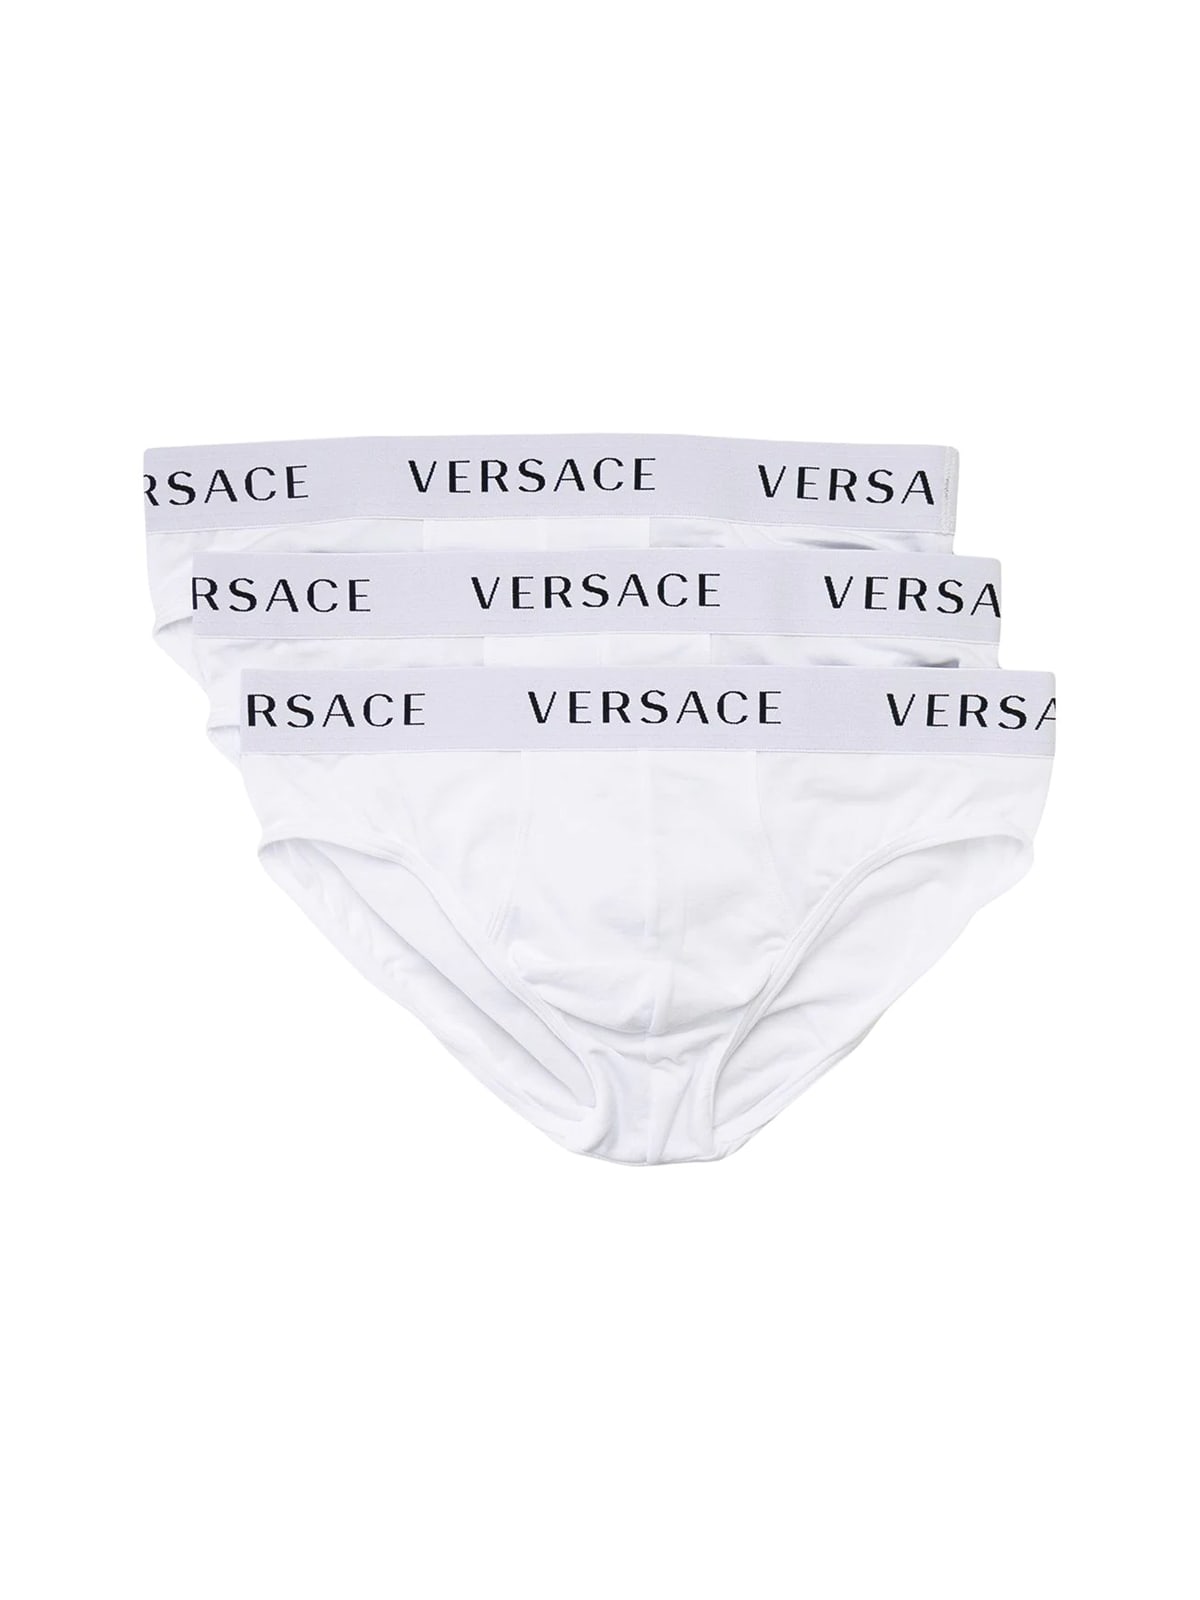 Versace Tri-pack Underwear Slip